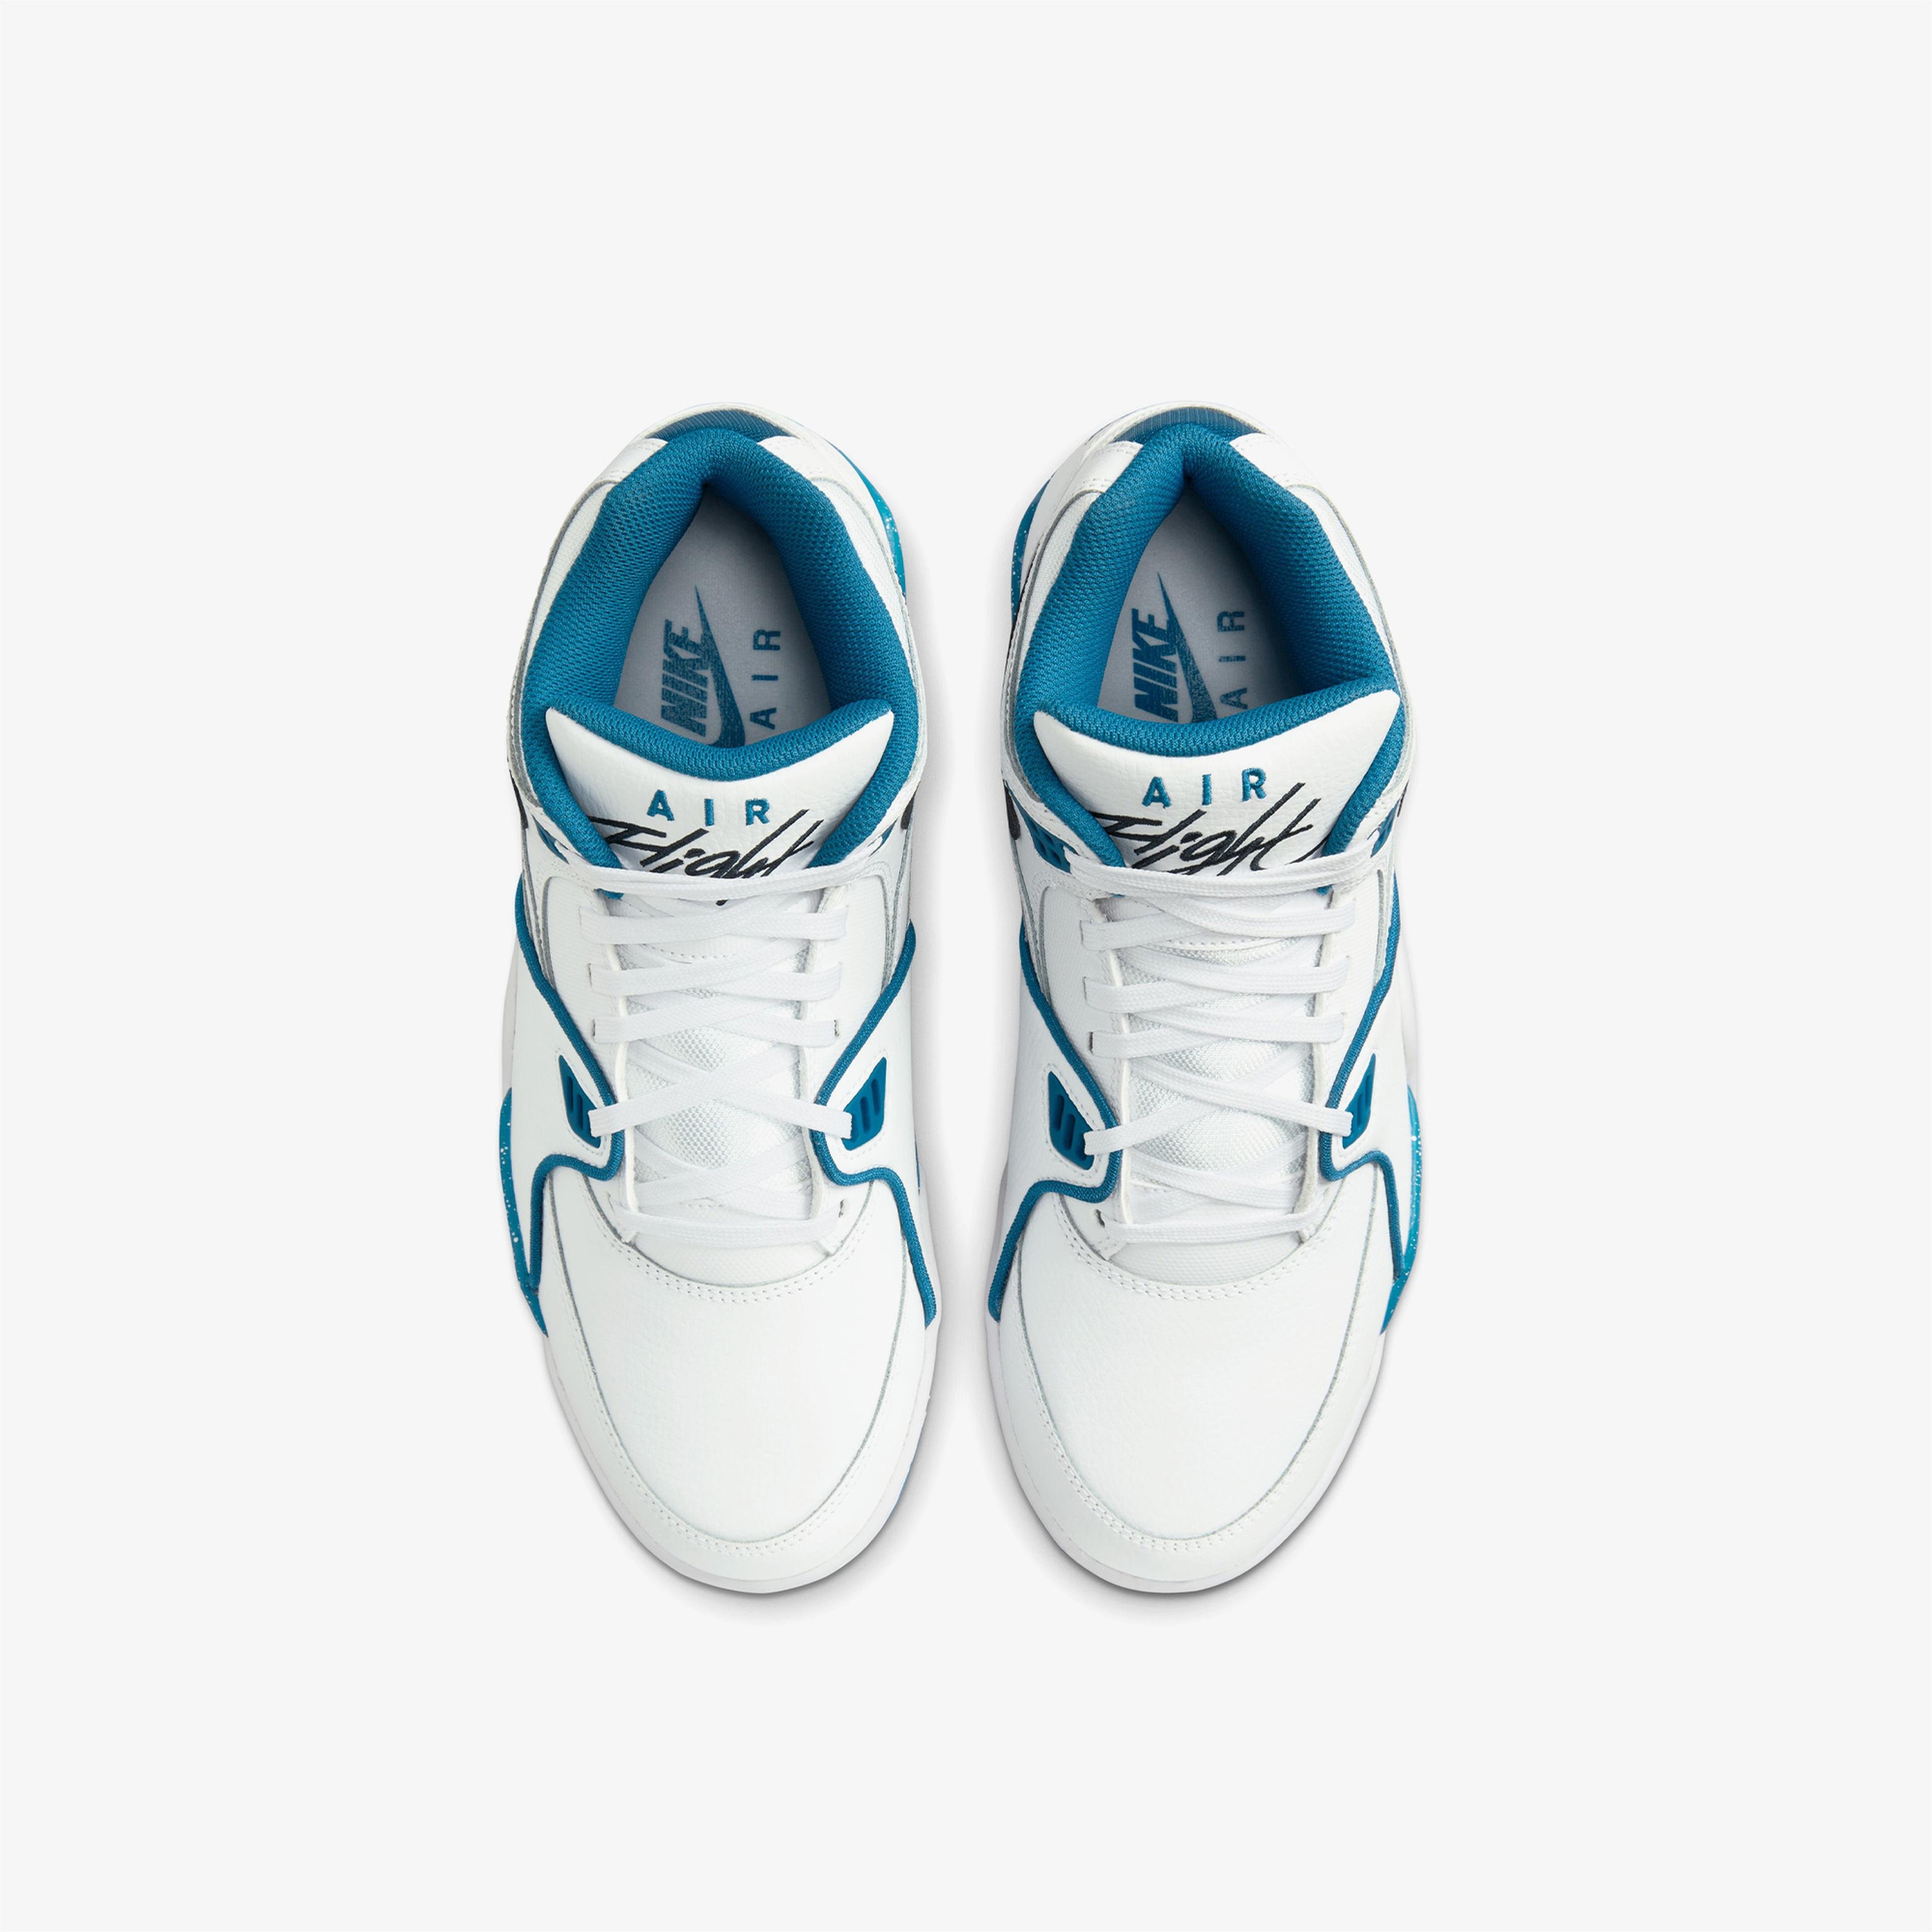 Nike Air Flight 89 Erkek Beyaz/Mavi Spor Ayakkabı